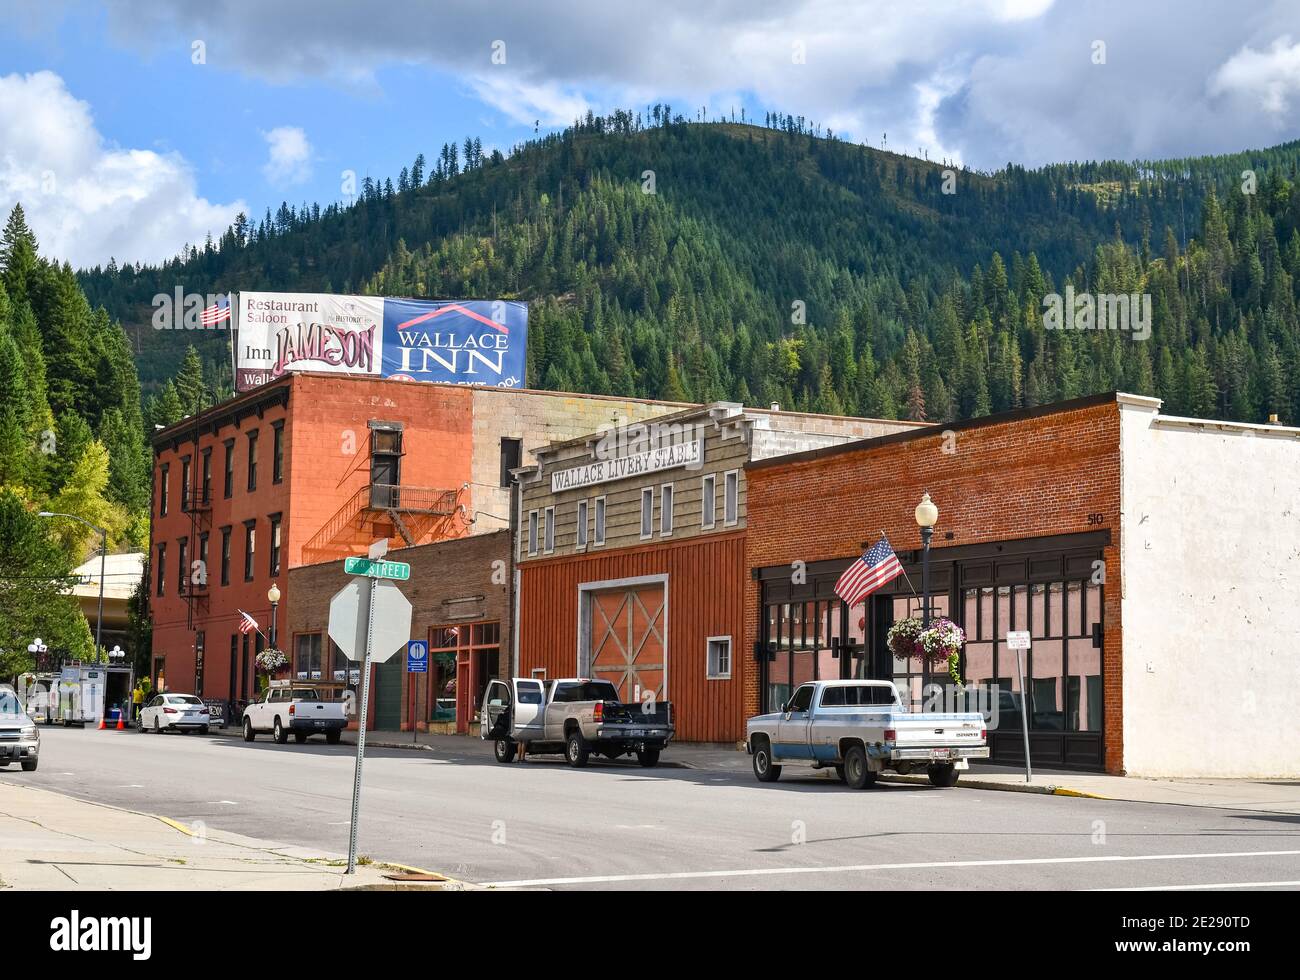 Una strada tipica nella storica città mineraria di Wallace, Idaho, nell'area della Silver Valley nell'entroterra nord-occidentale. Foto Stock